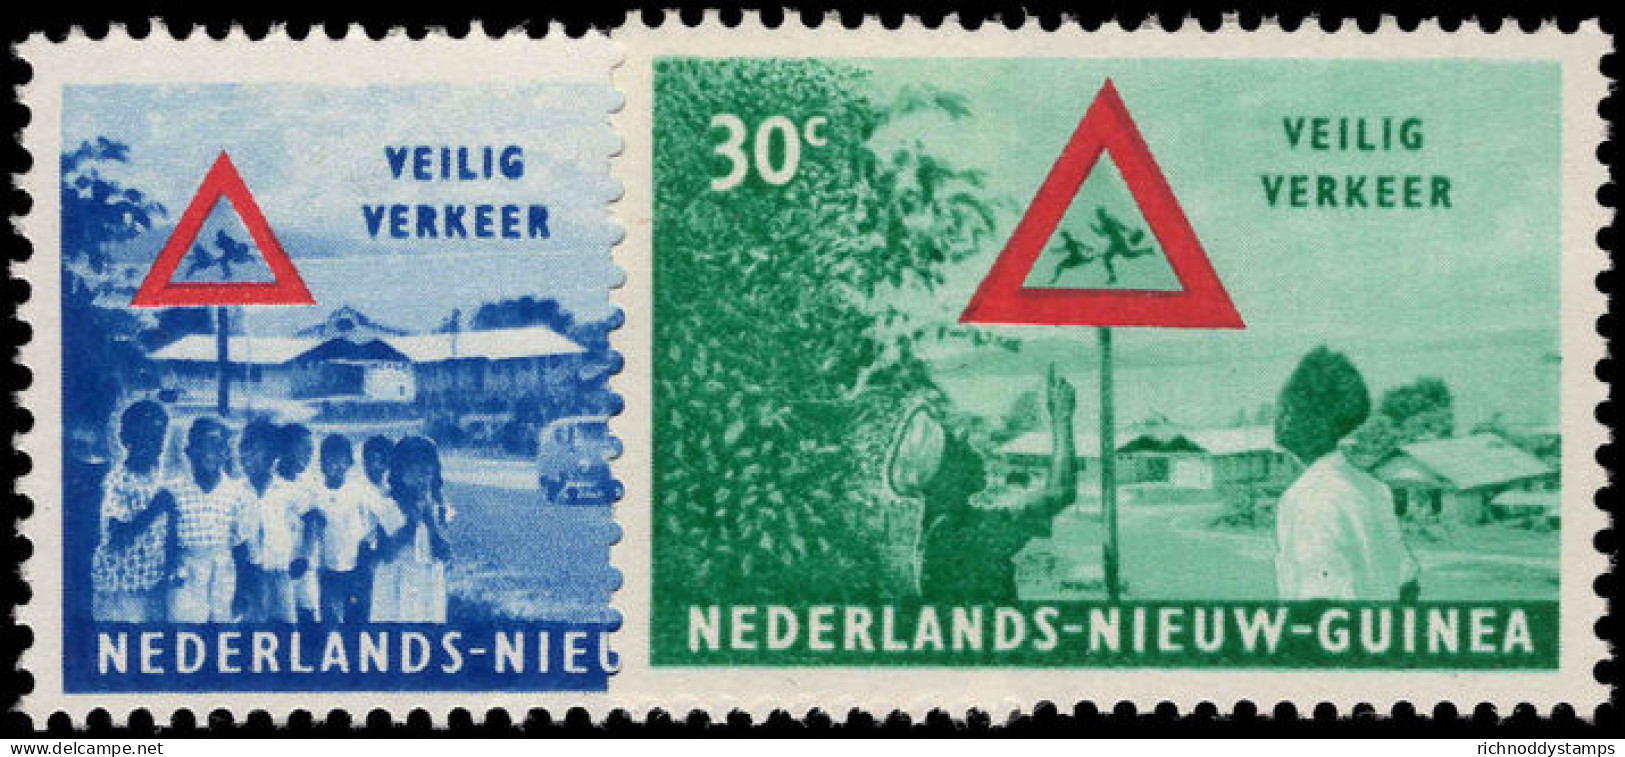 Netherlands New Guinea 1962 Road Safety Unmounted Mint. - Niederländisch-Neuguinea